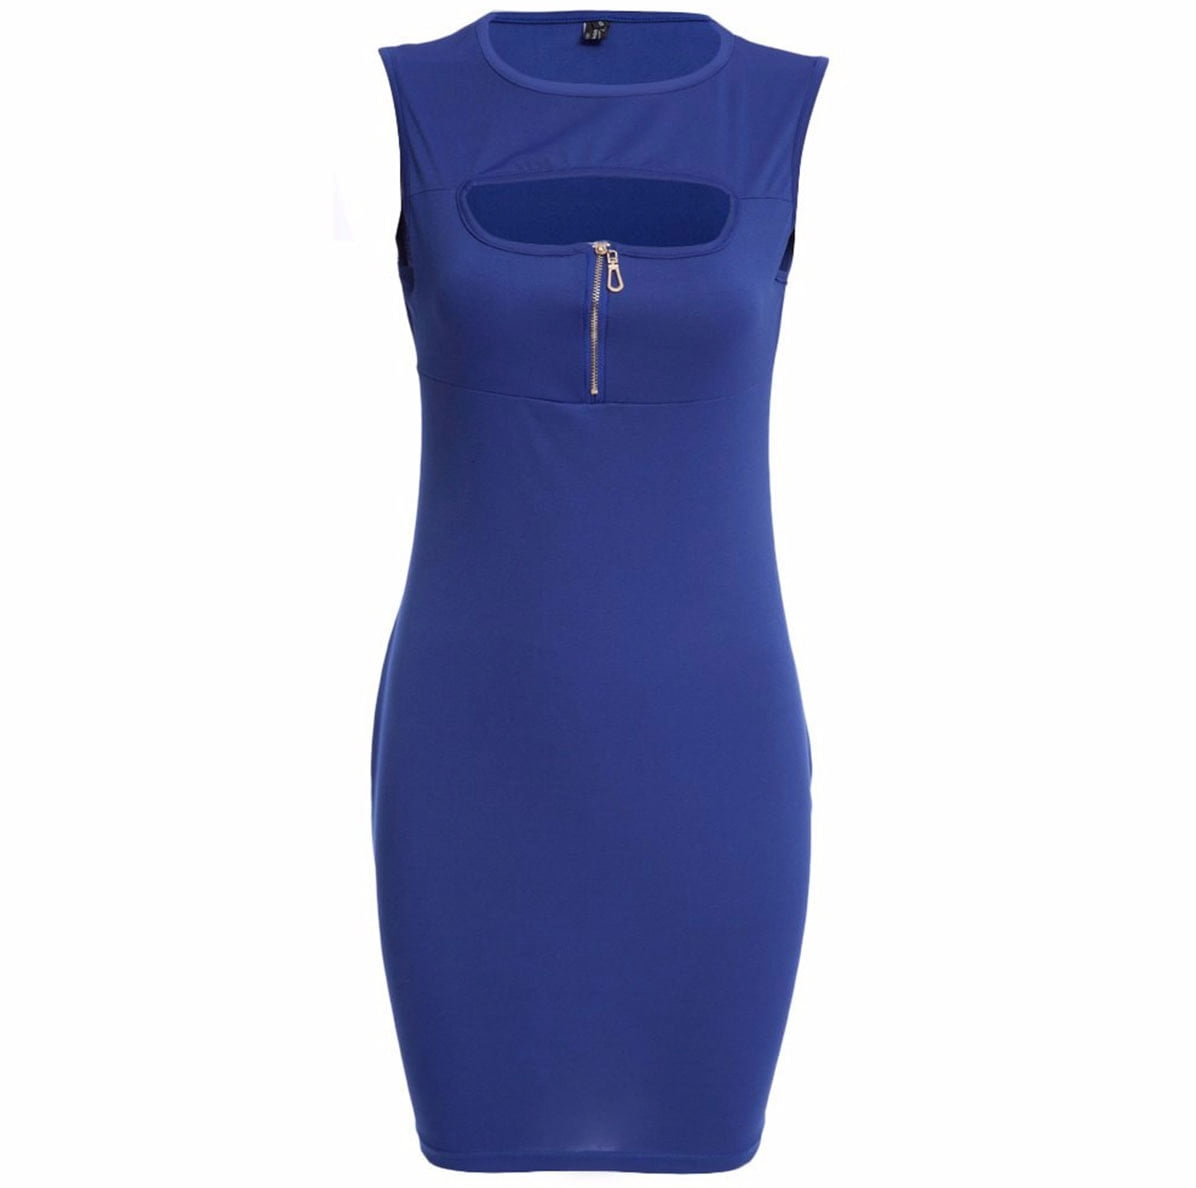 M0176 blue1 Party Dresses maureens.com boutique